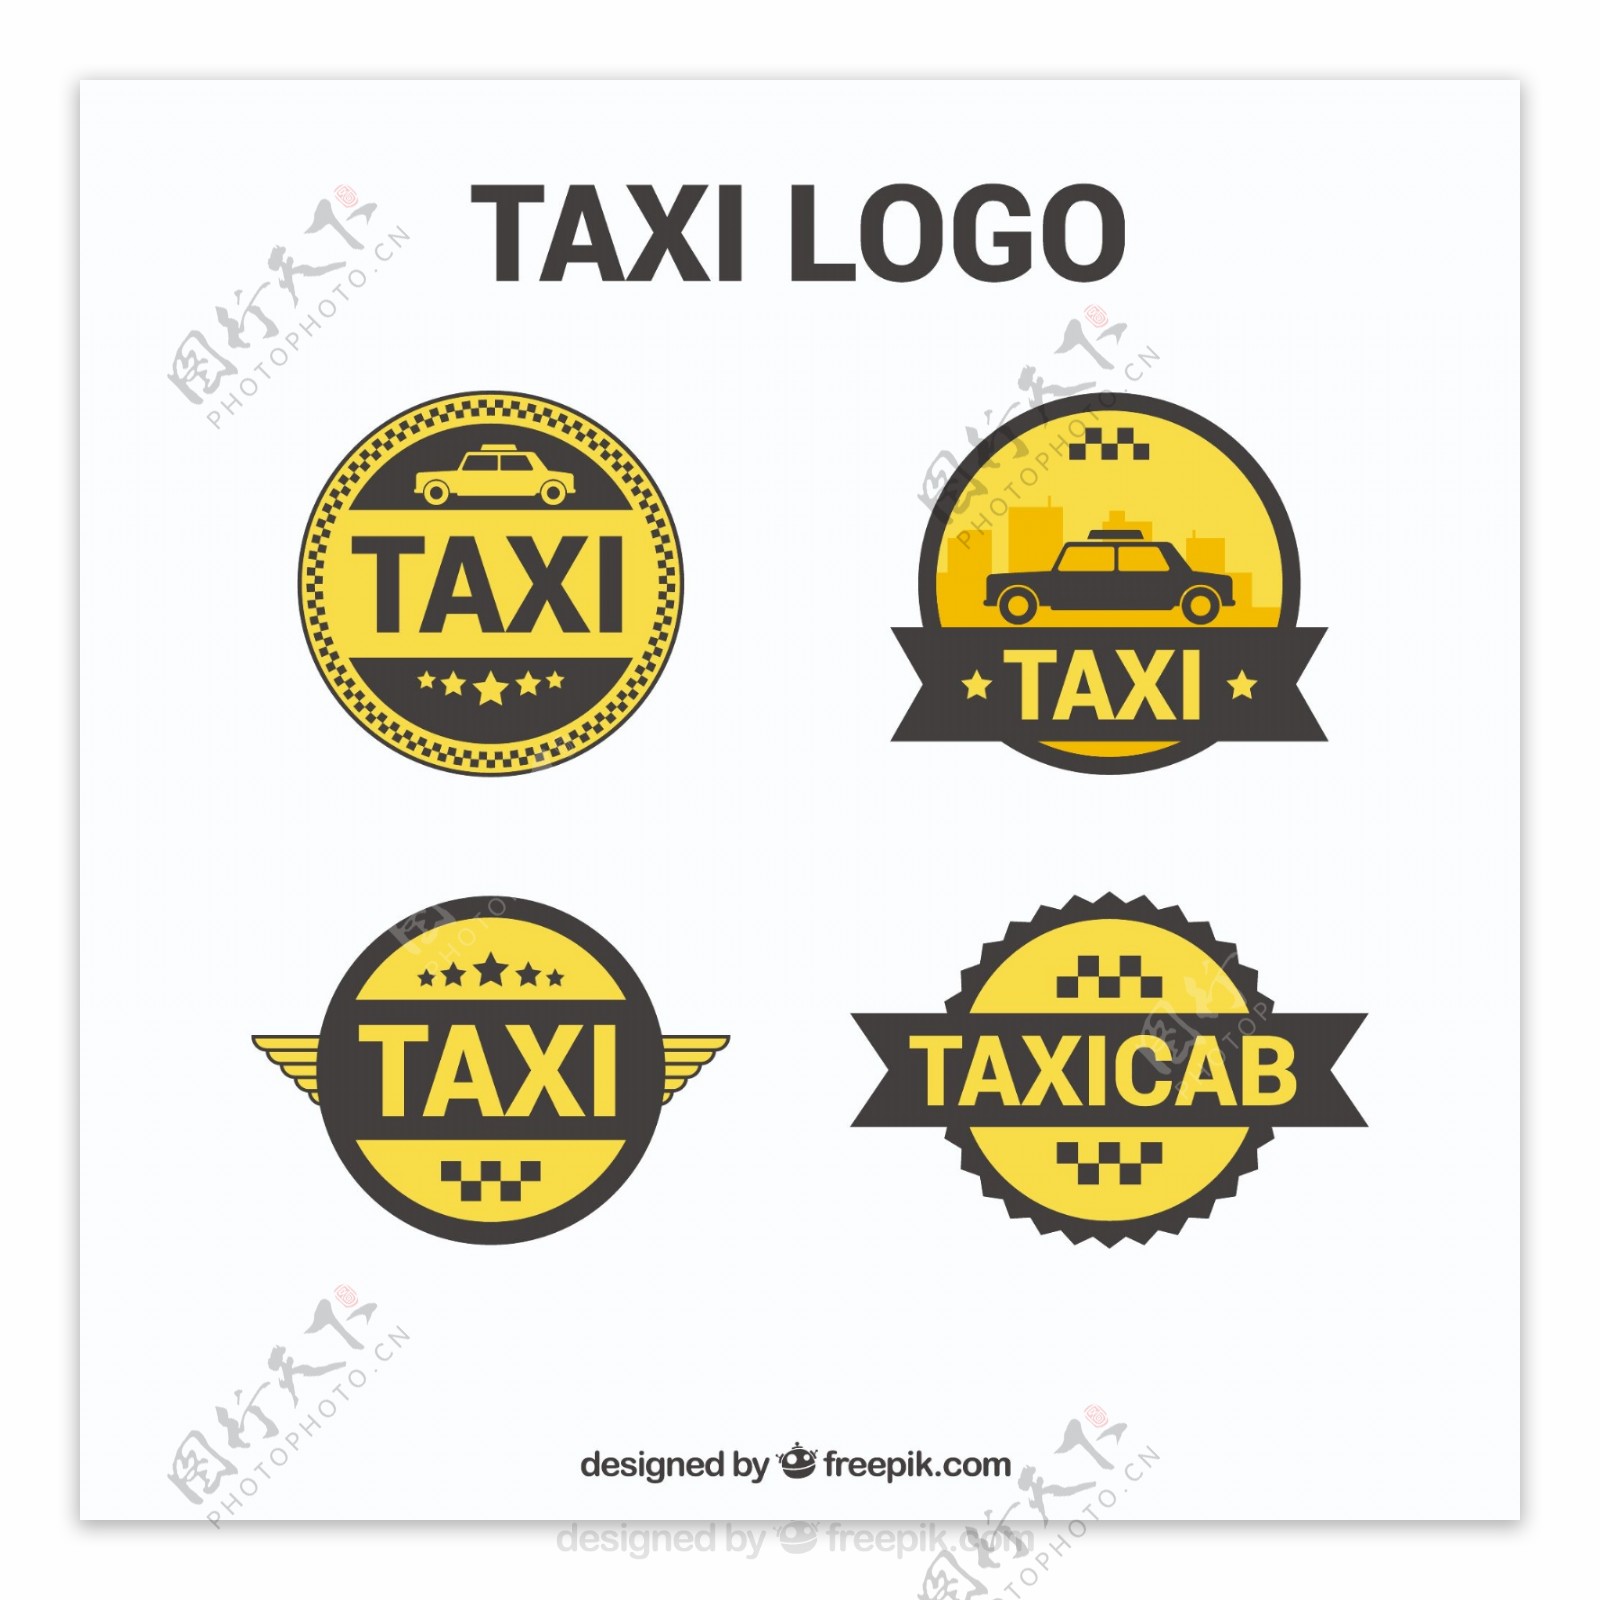 出租车服务的圆形标志